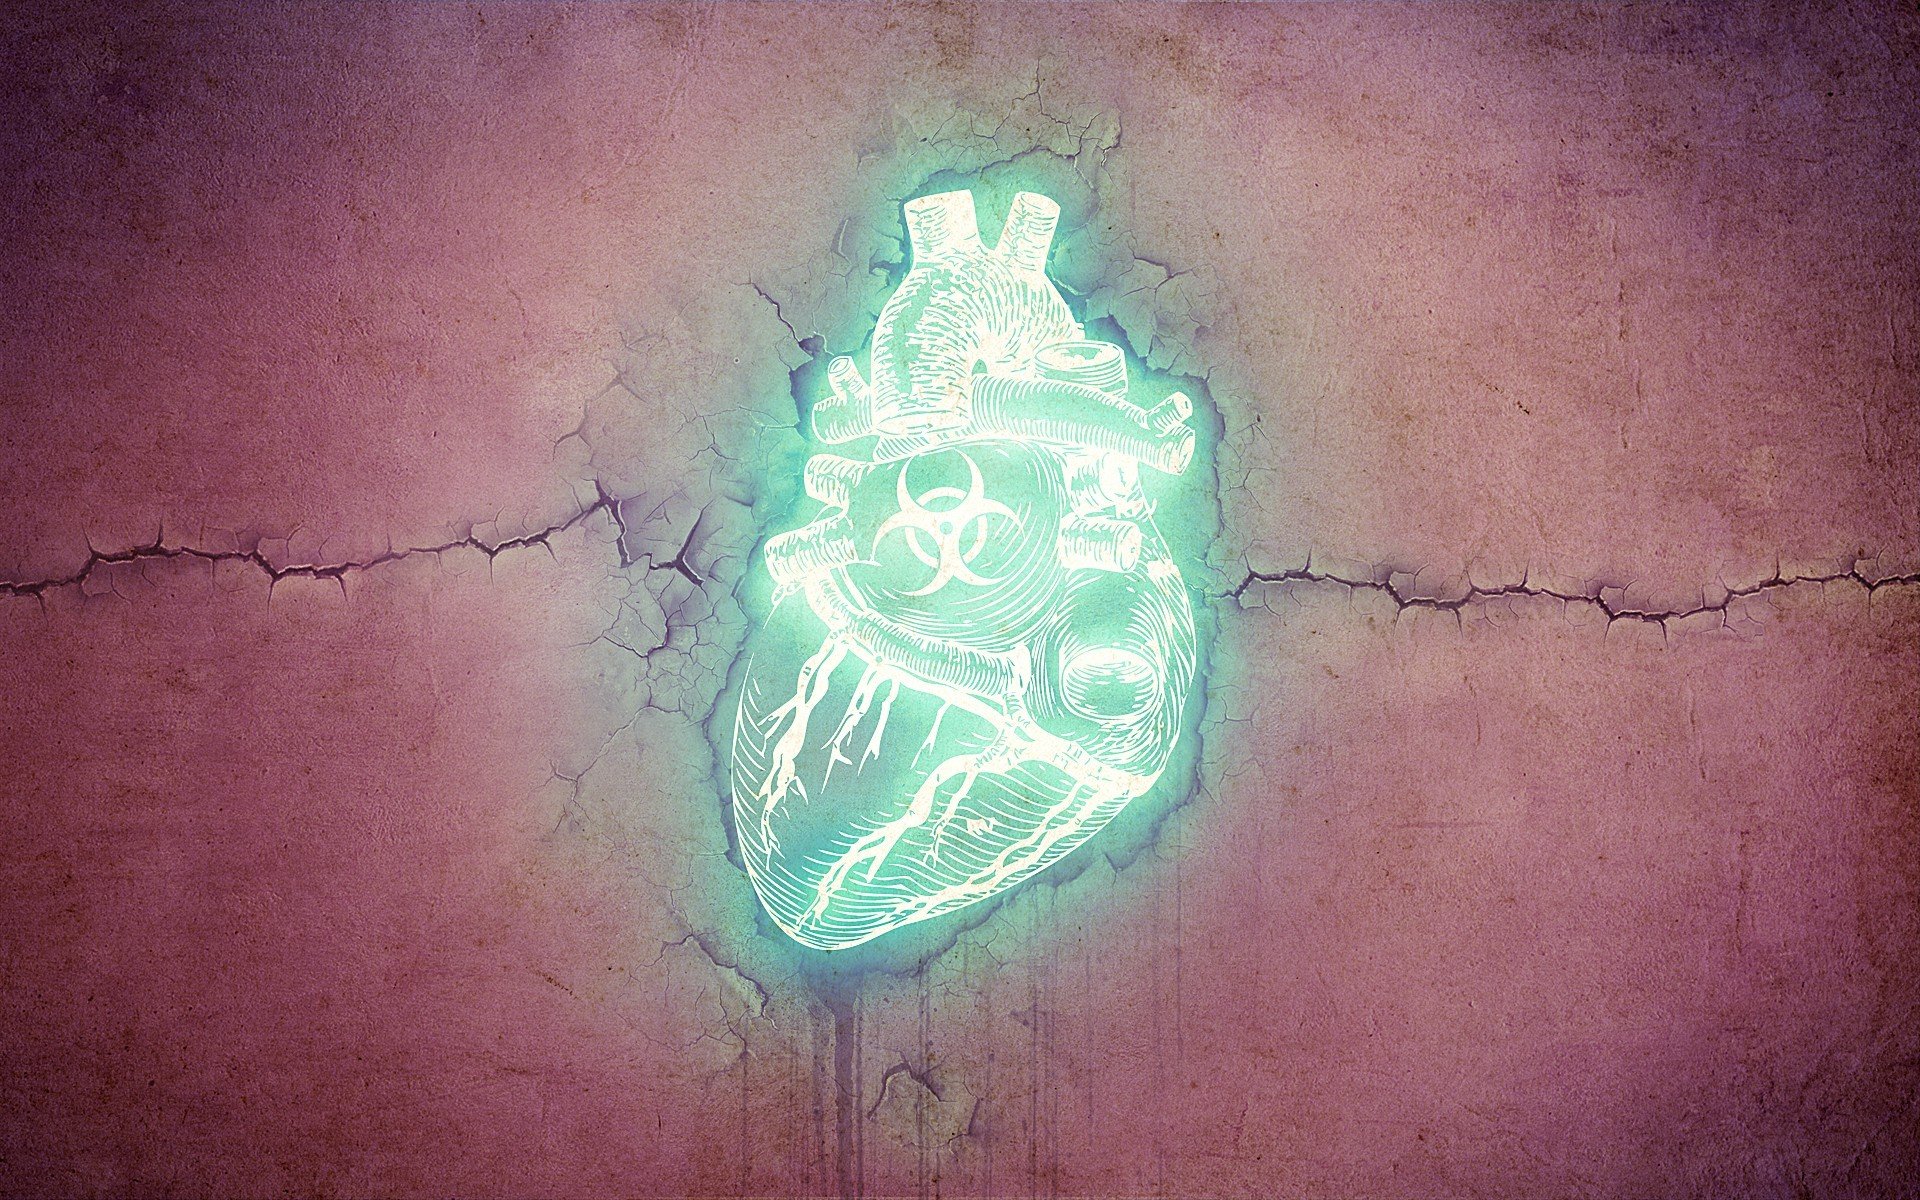 hearts Wallpaper